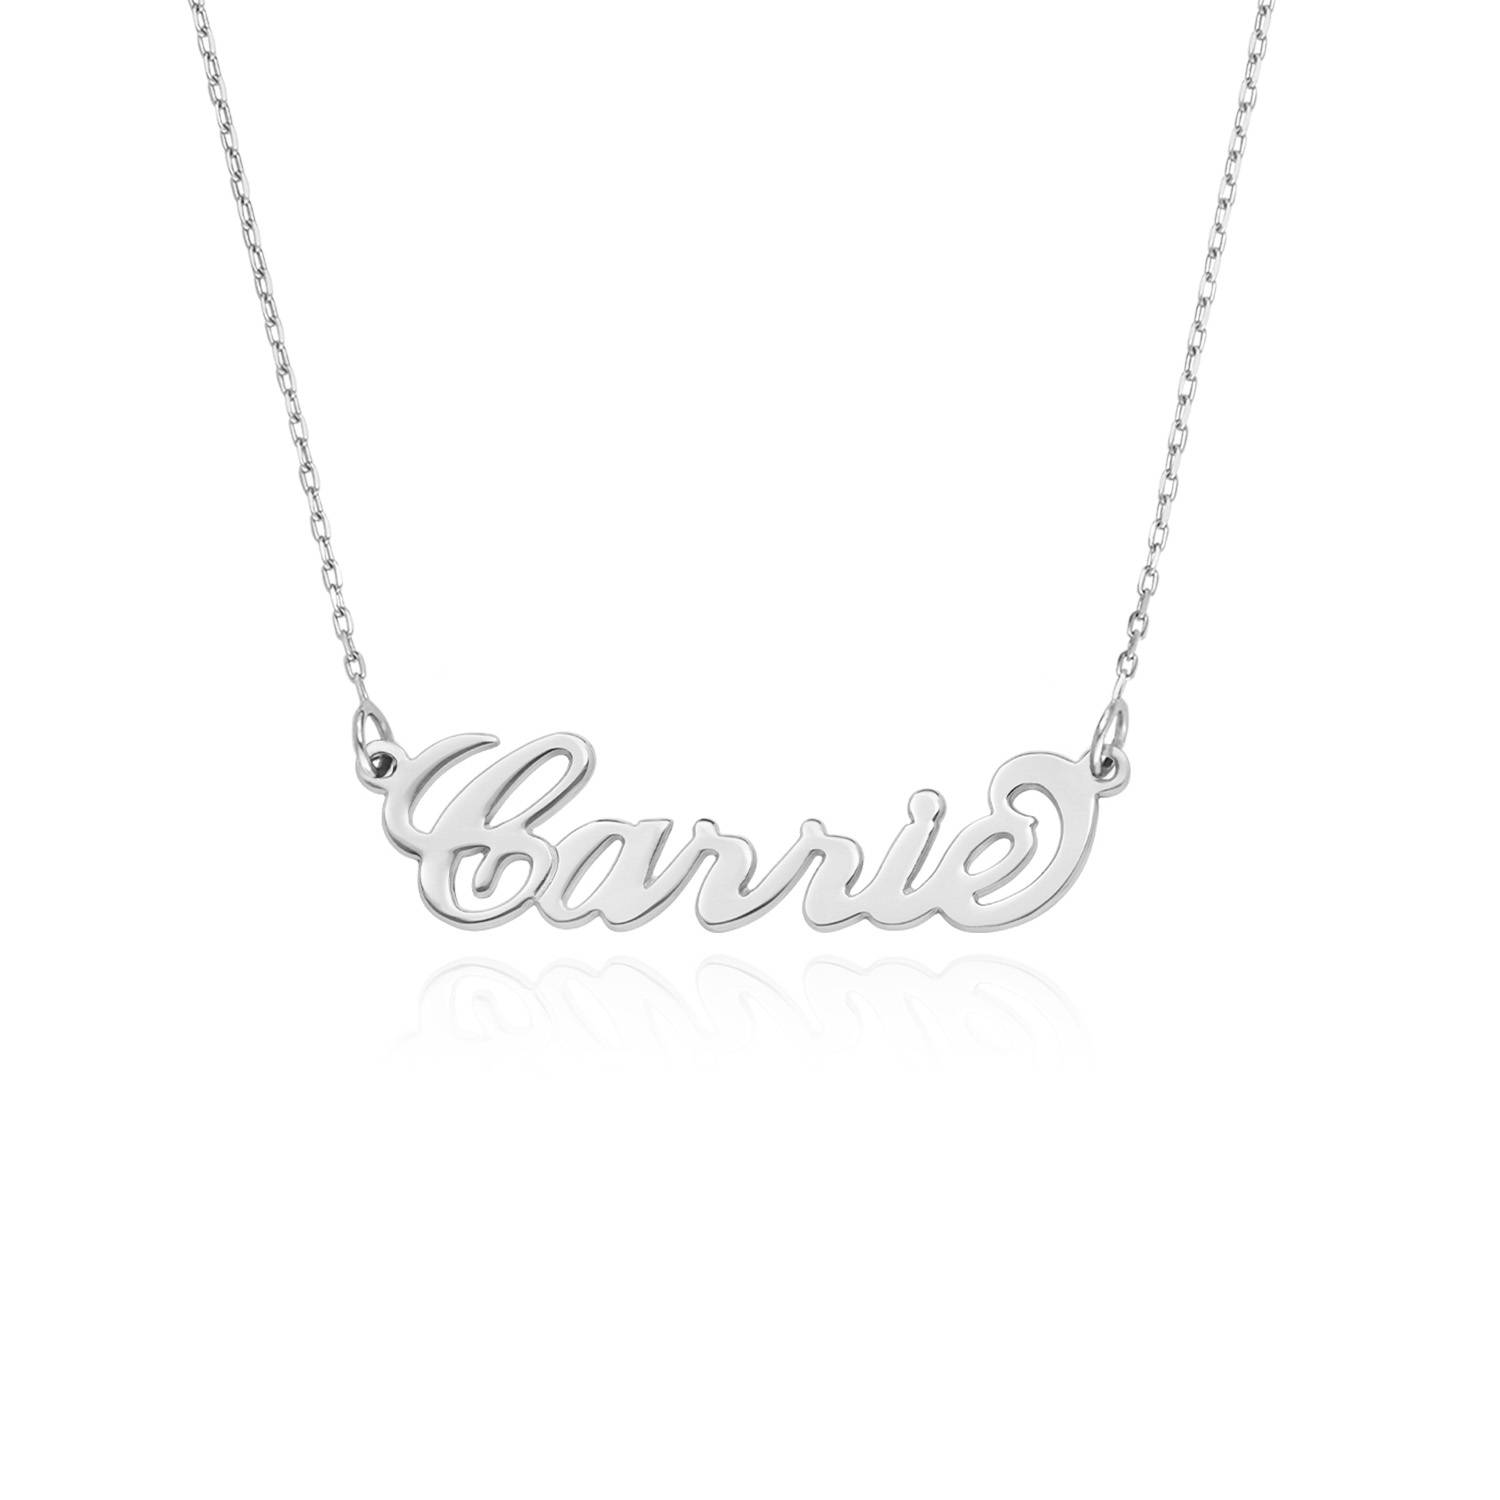 Collar con nombre estilo “Carrie” personalizado, oro blanco 14k-2 foto de producto